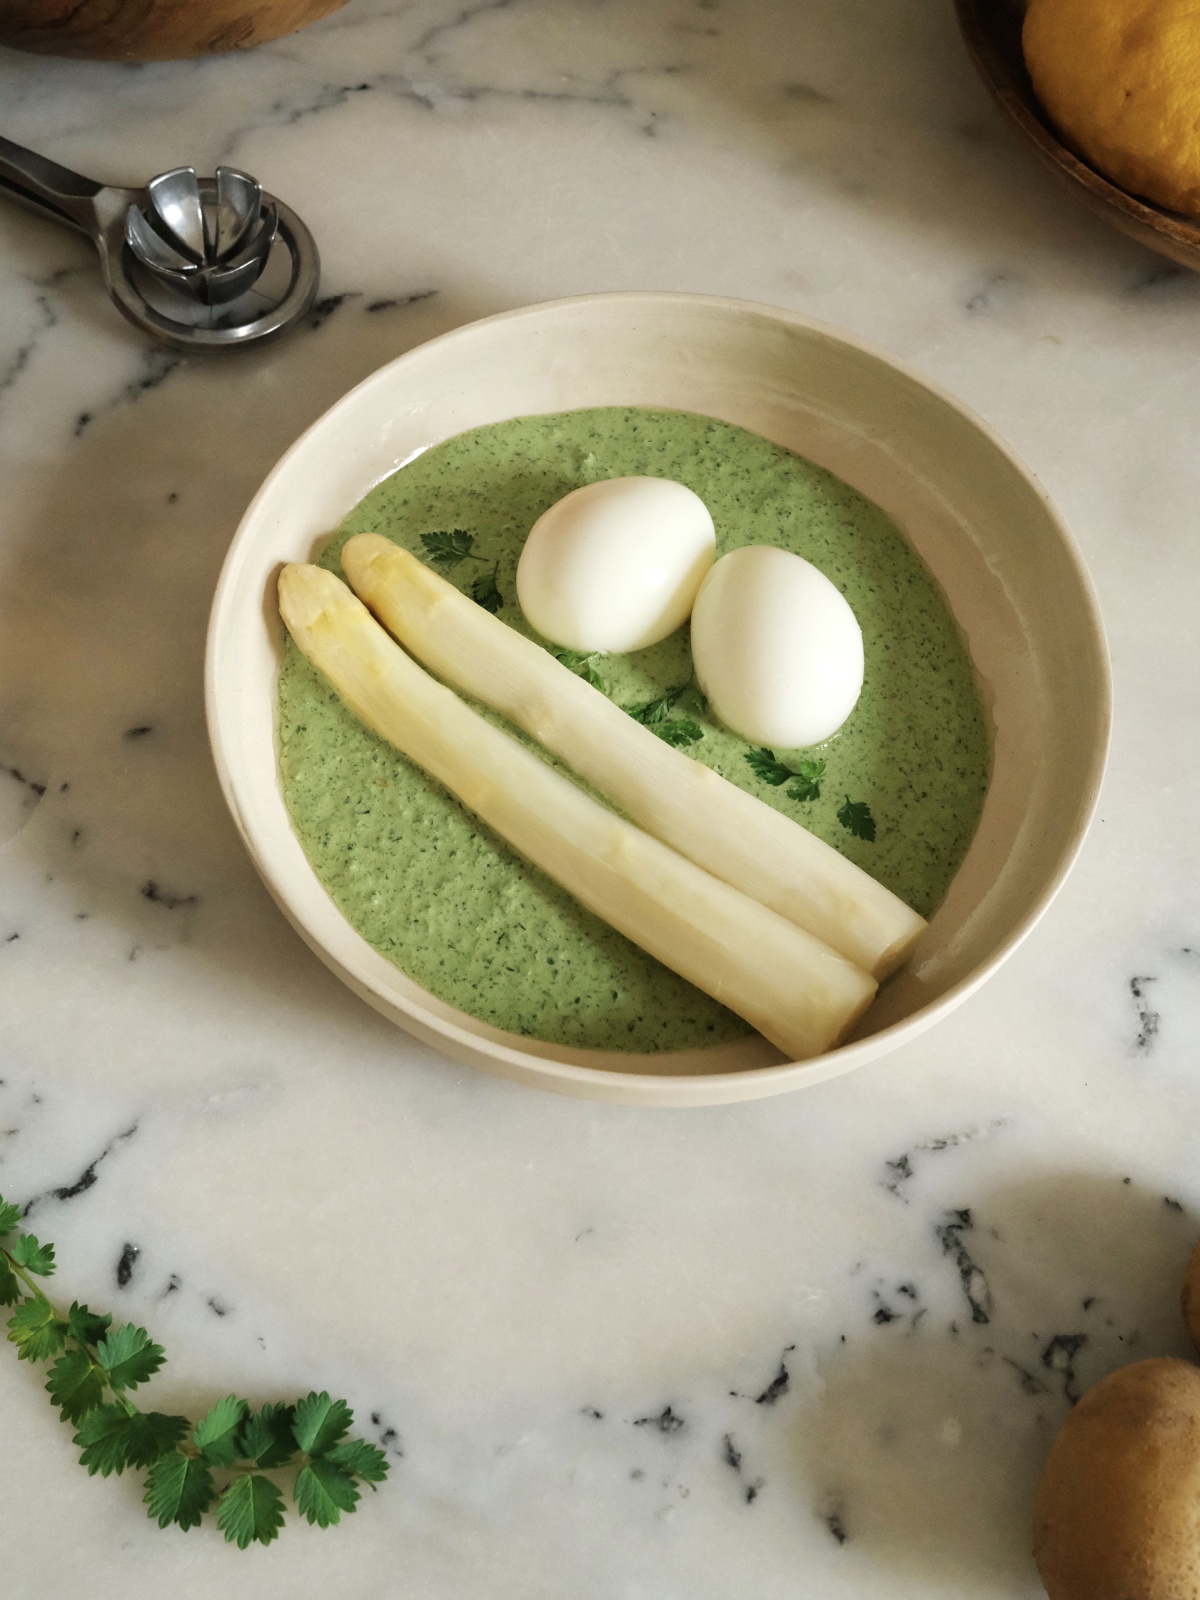 Bowl of grüne sauce with eggs and asparagus